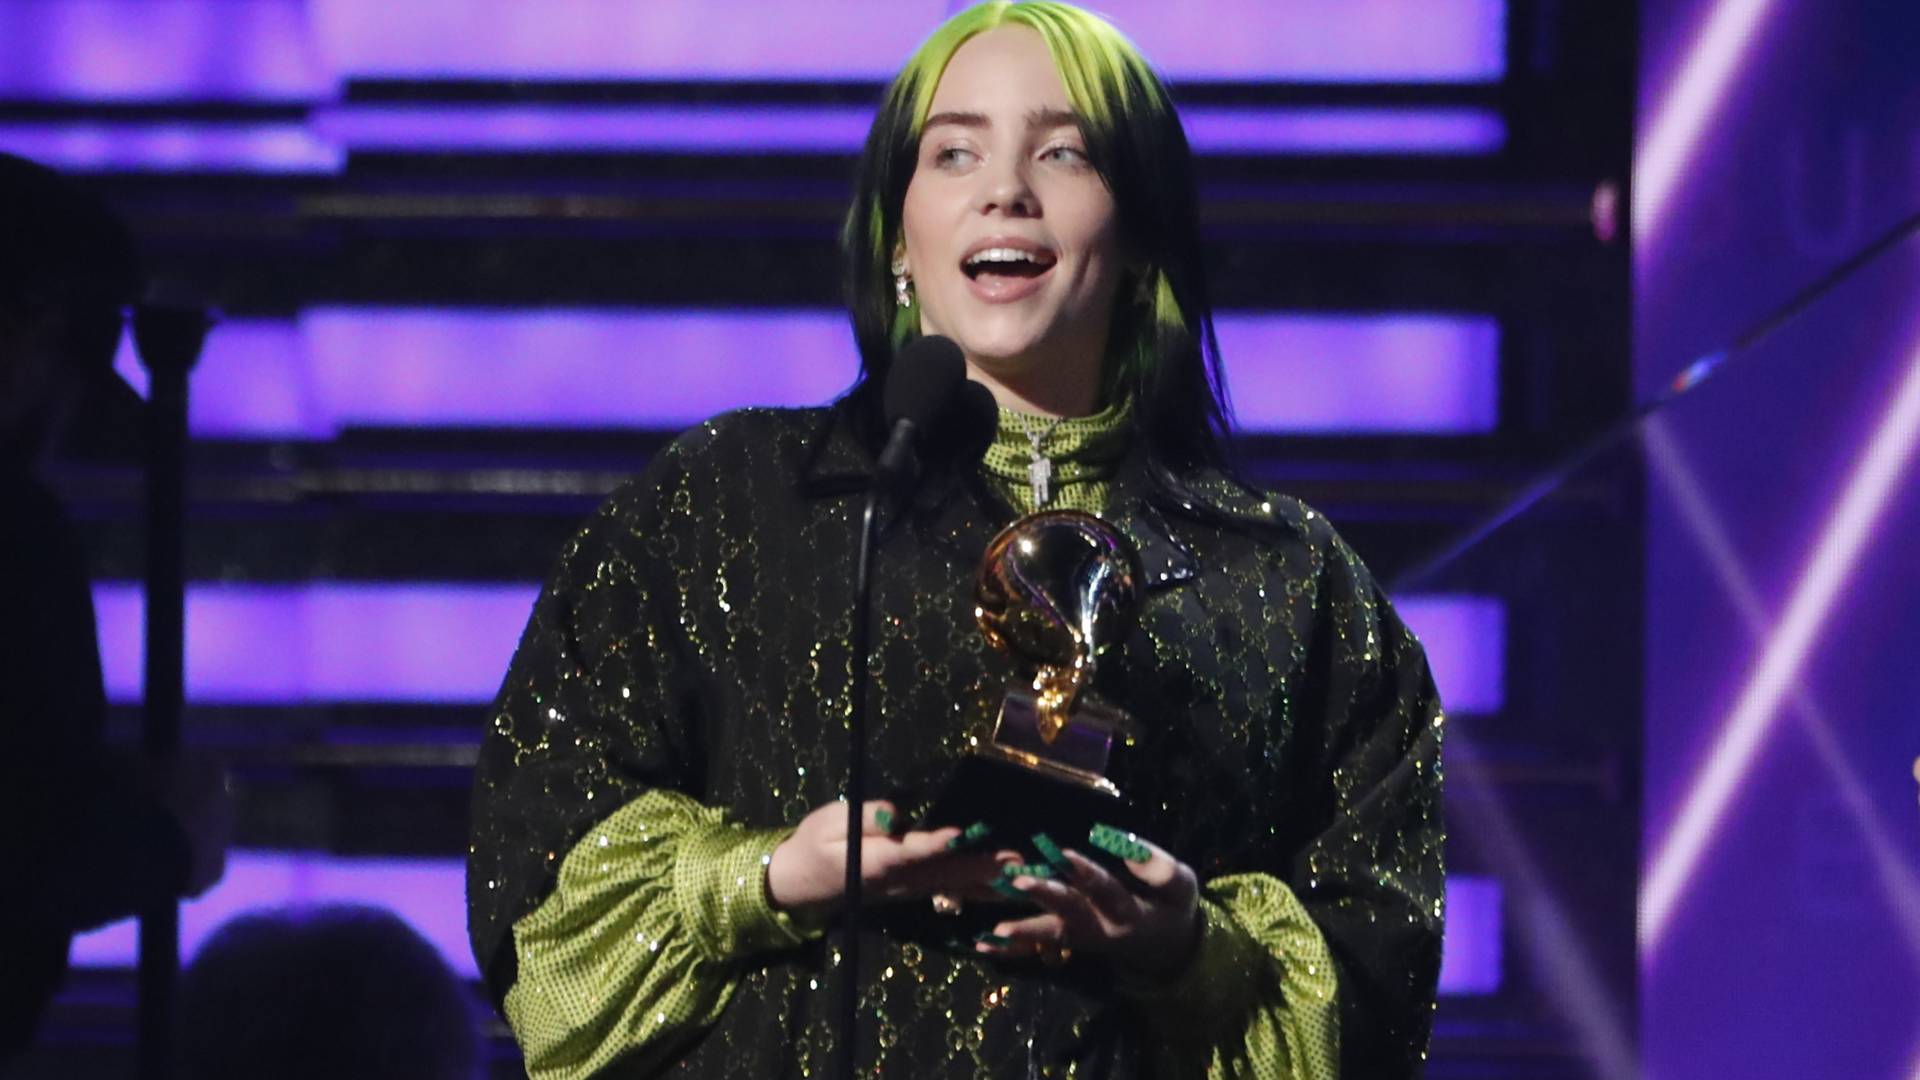 Rekord Billie Eilish na Grammy 2020: Stala sa prvou umelkyňou, ktorá získala 4 veľké ceny